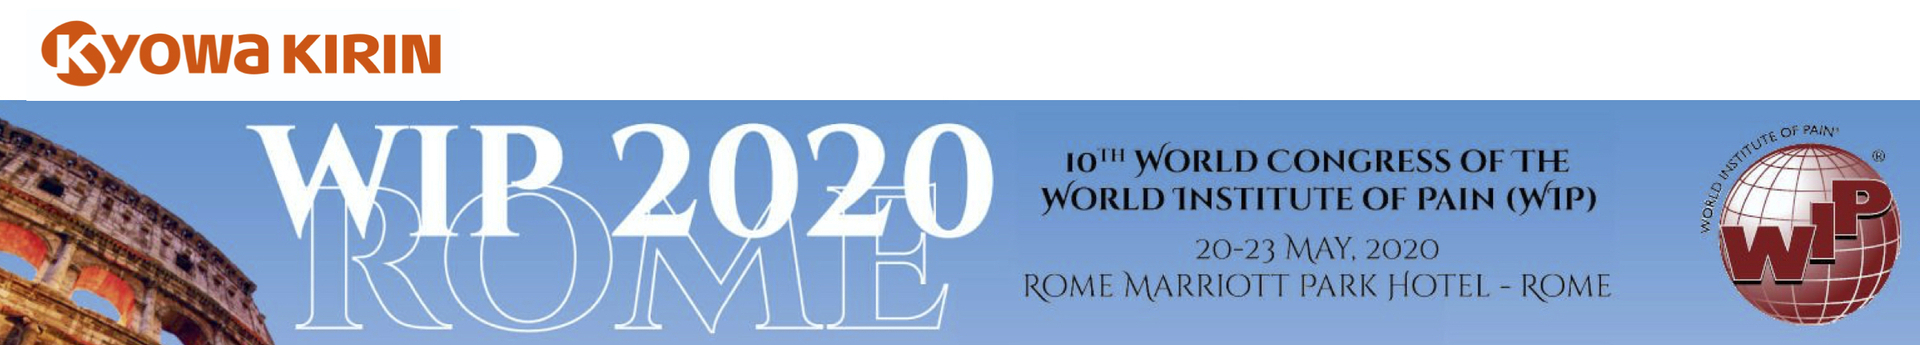 Kyowa Kirin / WIP 2020 Rome